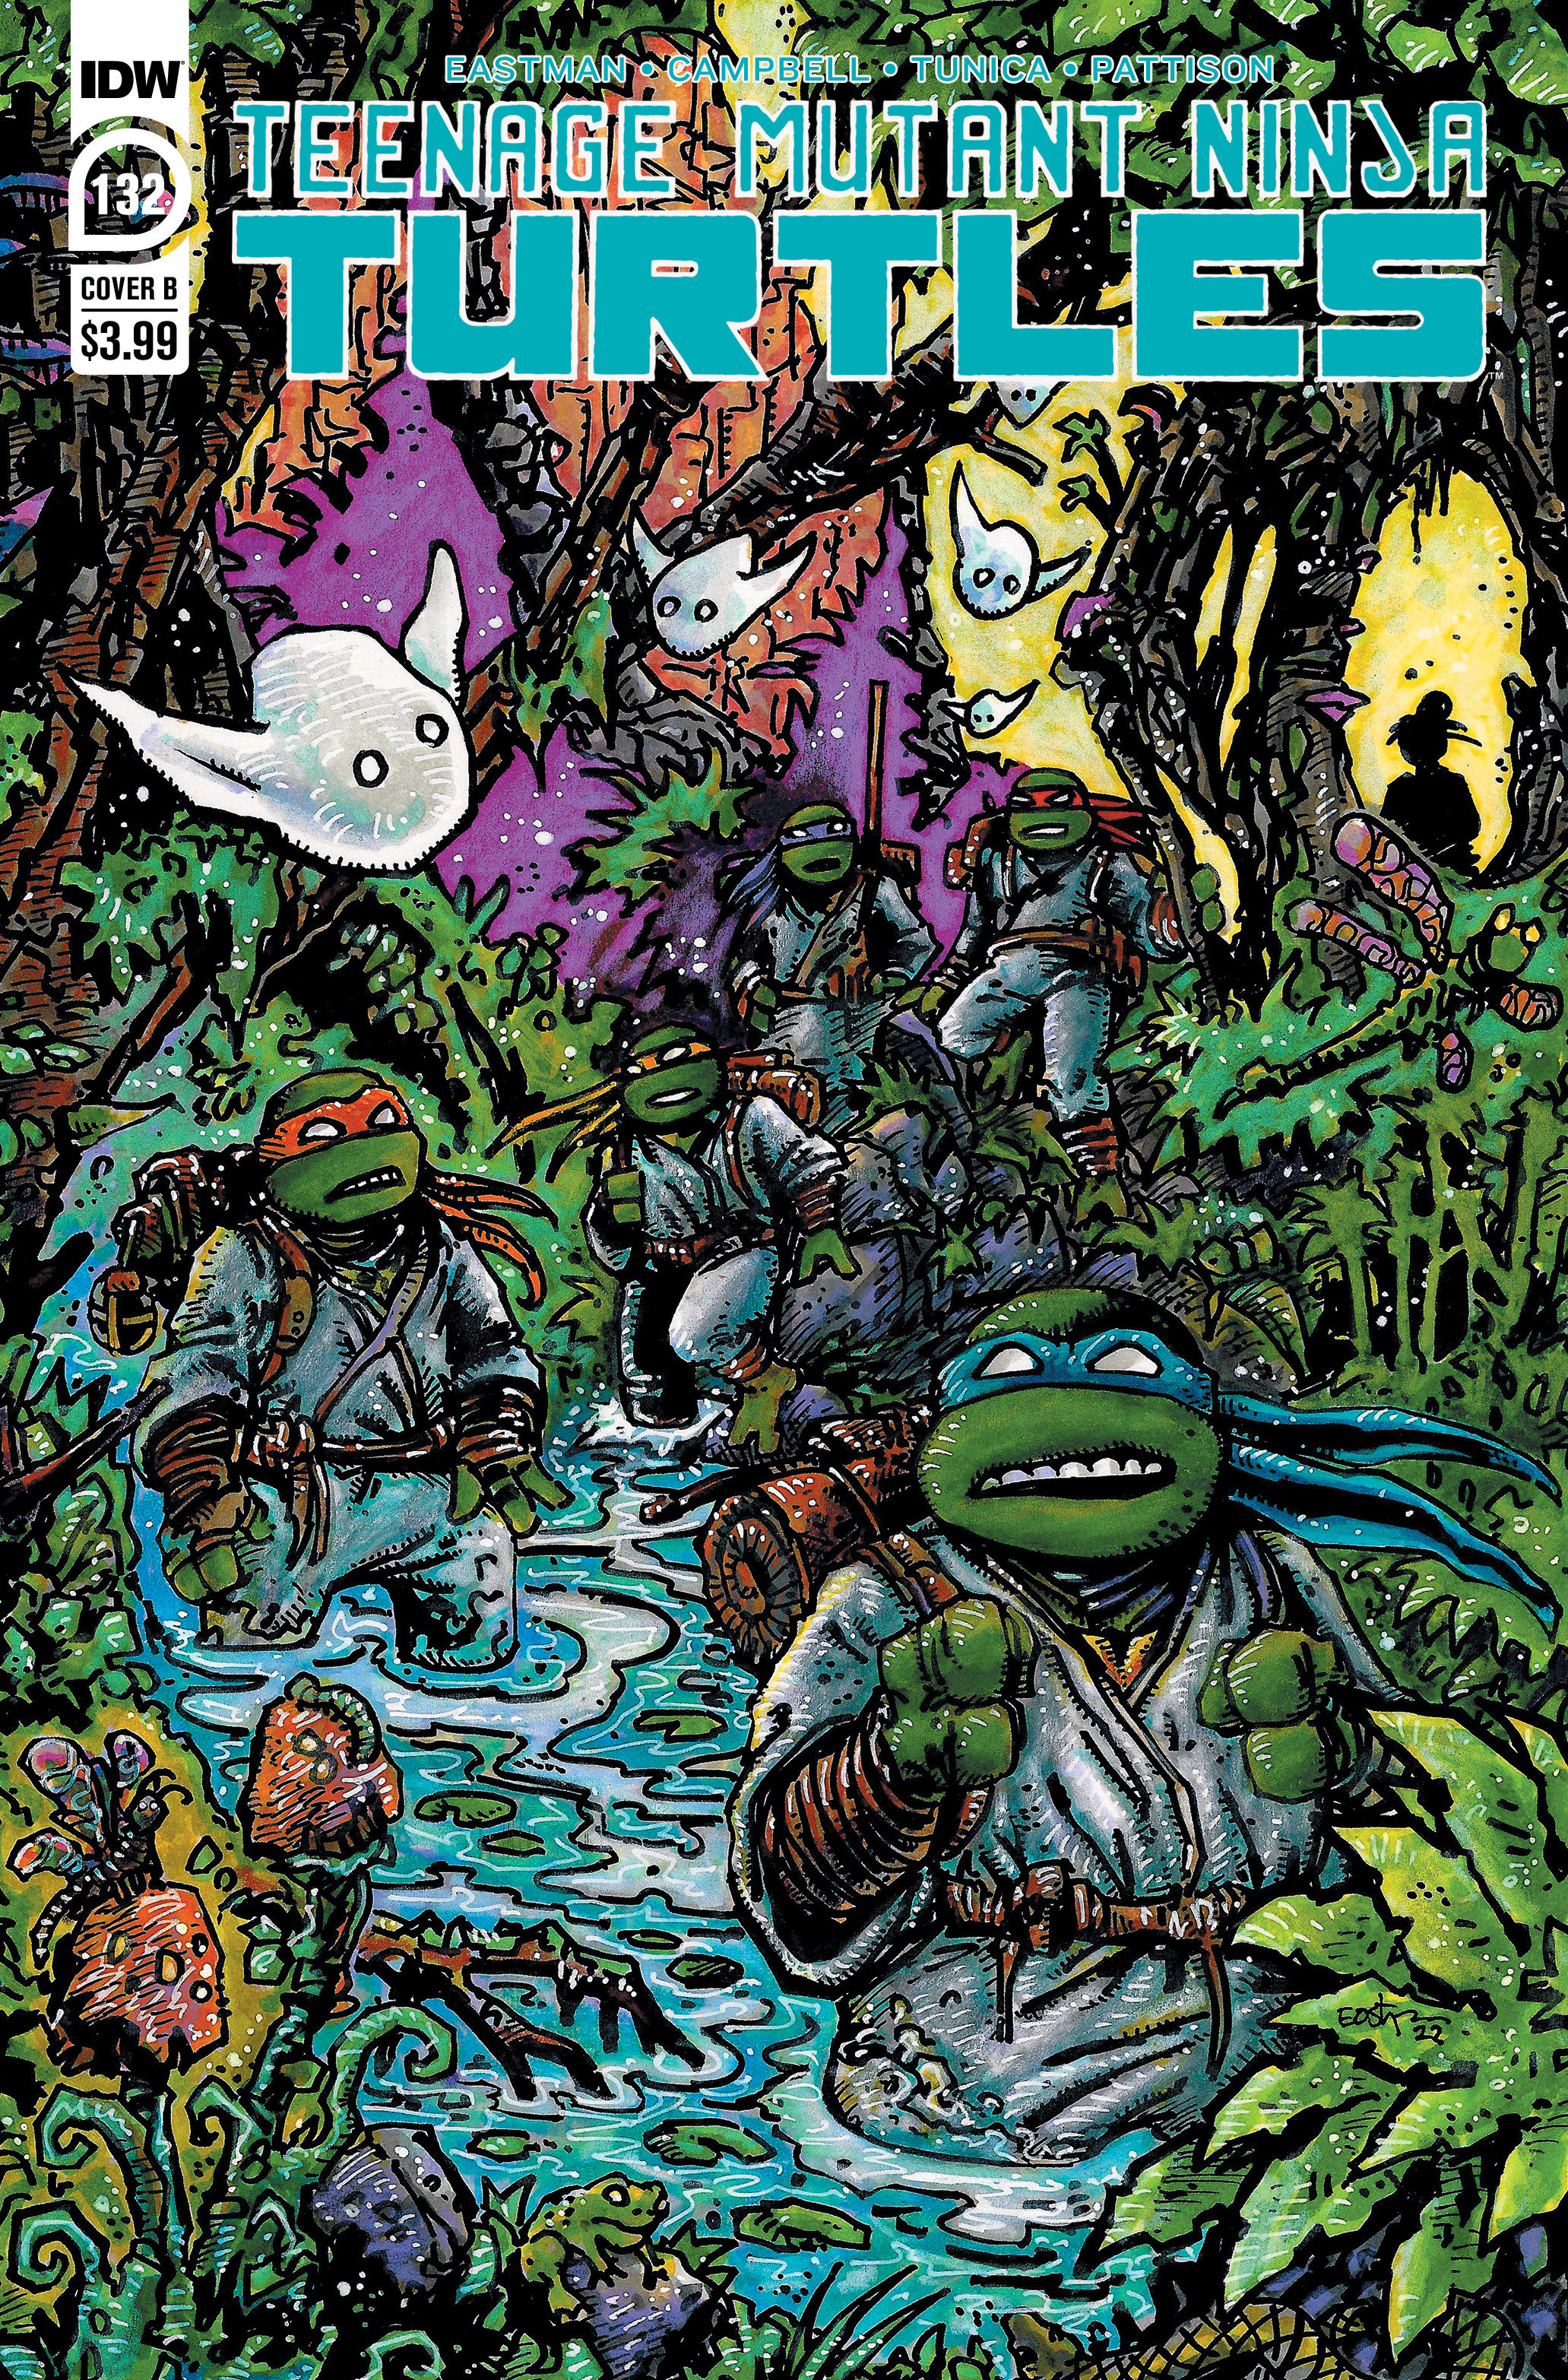 Teenage Mutant Ninja Turtles Ongoing #132 Cover B Eastman (2011)